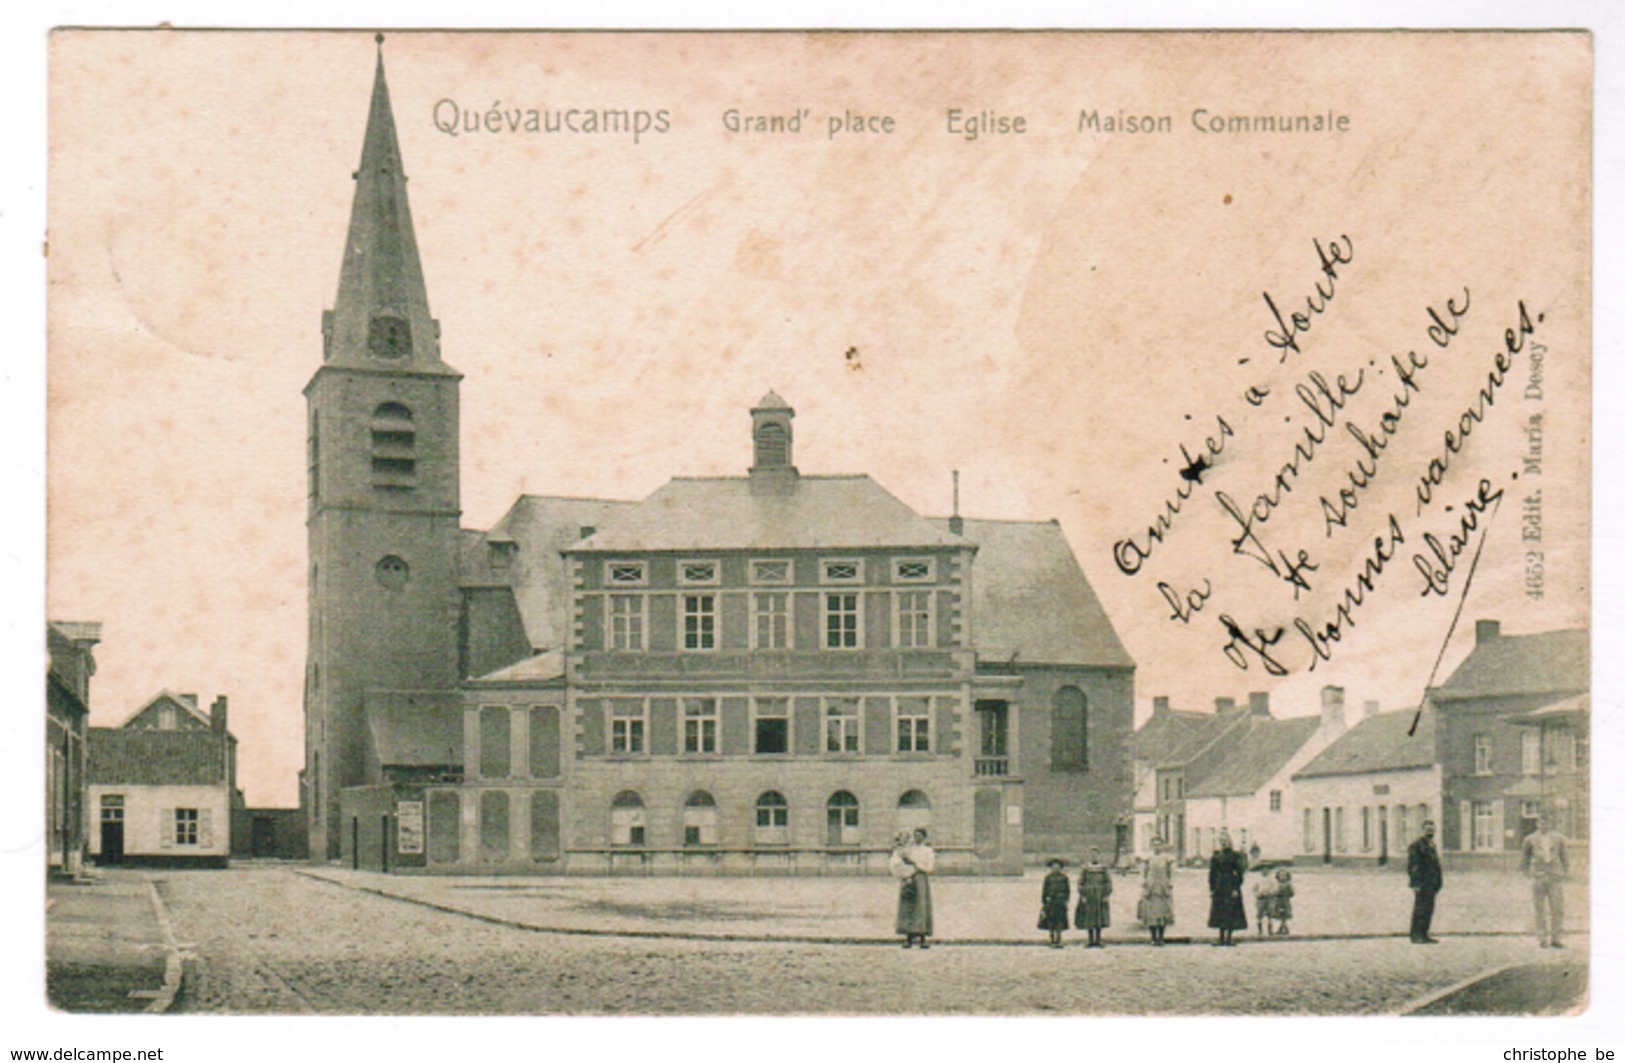 Quevaucamps, Grand Place, Eglise Maison Communale (pk59225) - Beloeil